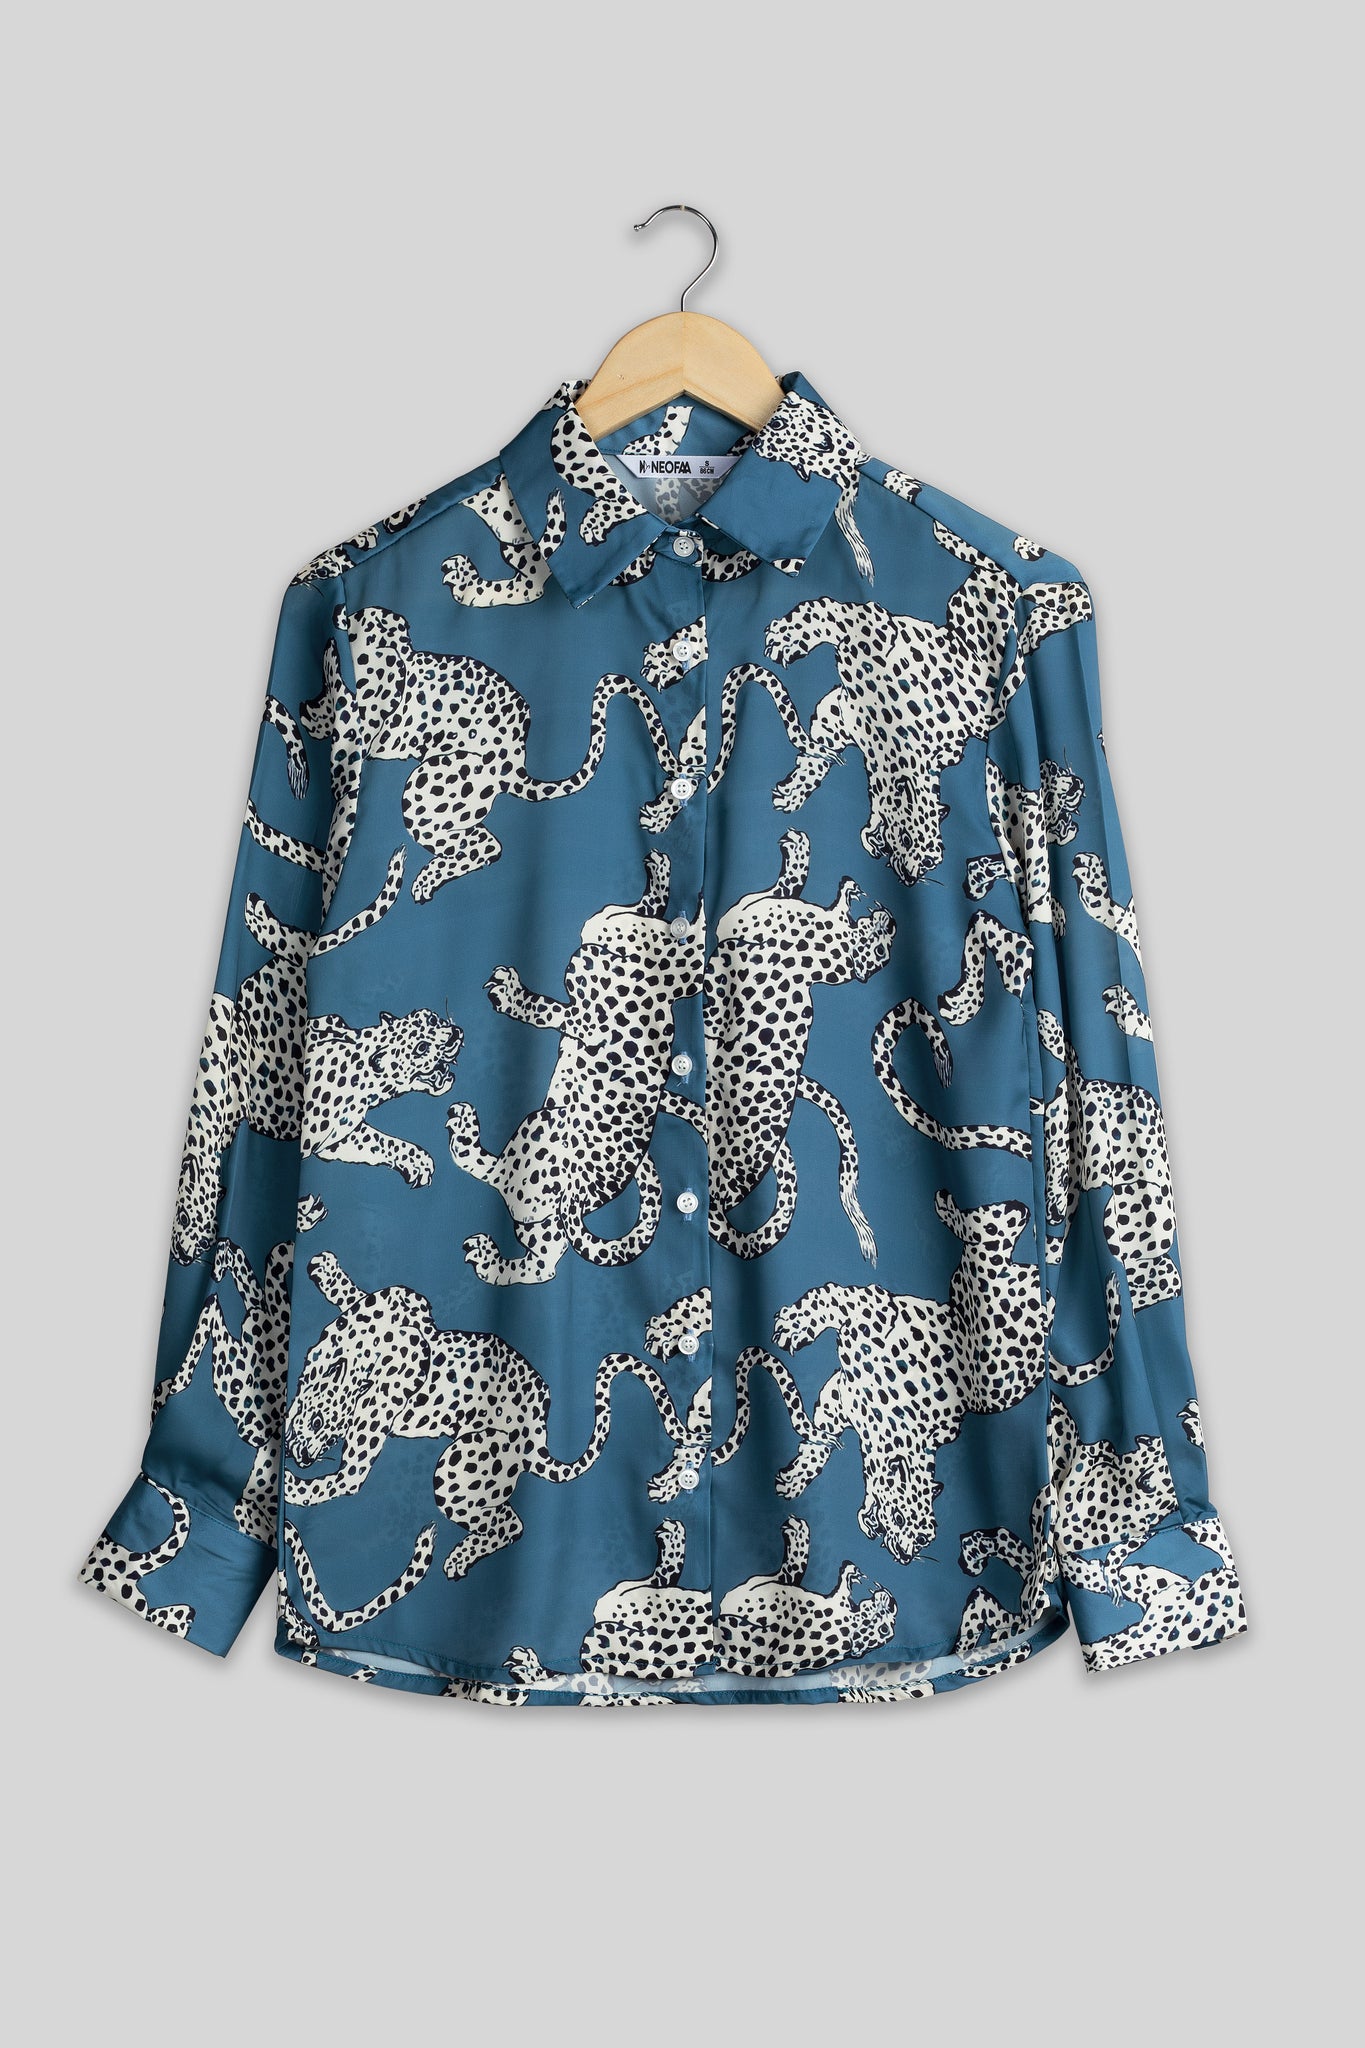 Leopard Print Shirt For Women